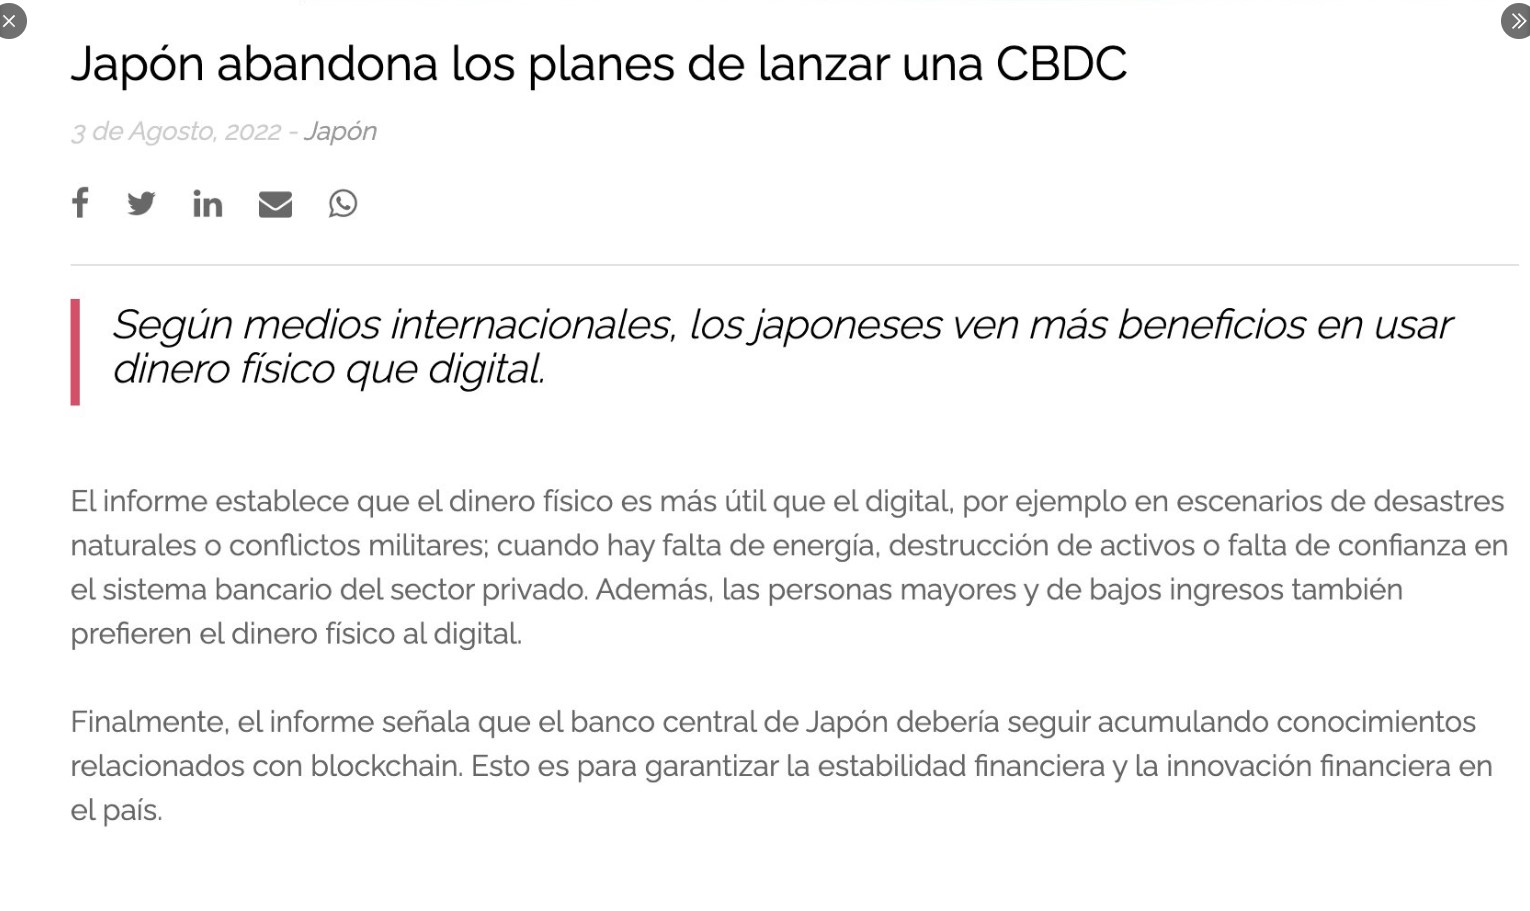 En Japón Ecuador Finlandia y Dinamarca no moneda digital programable 